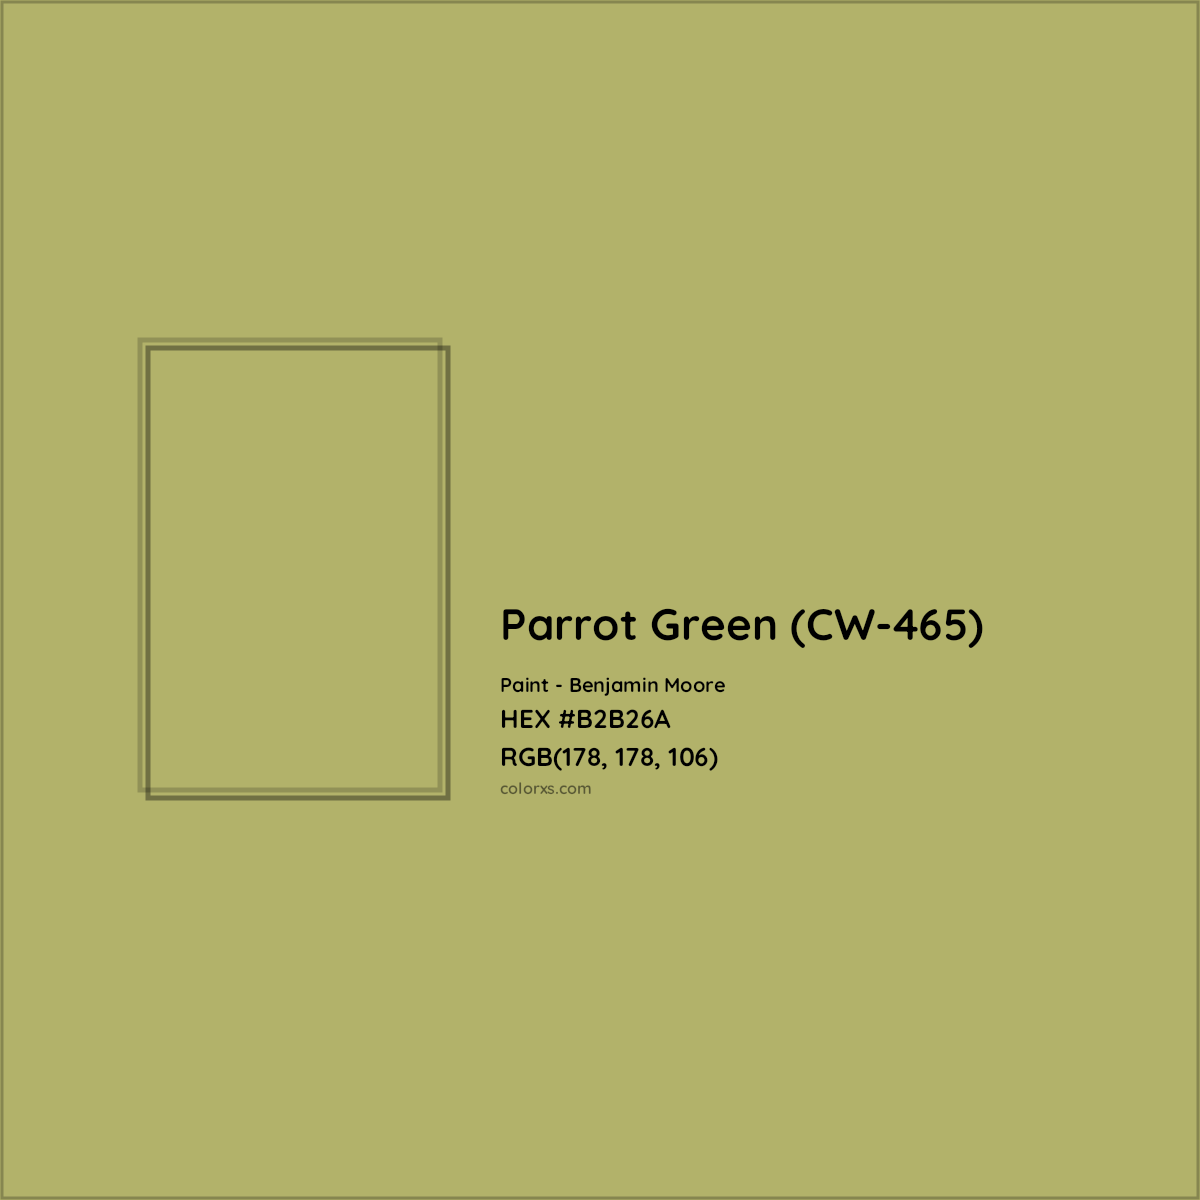 HEX #B2B26A Parrot Green (CW-465) Paint Benjamin Moore - Color Code